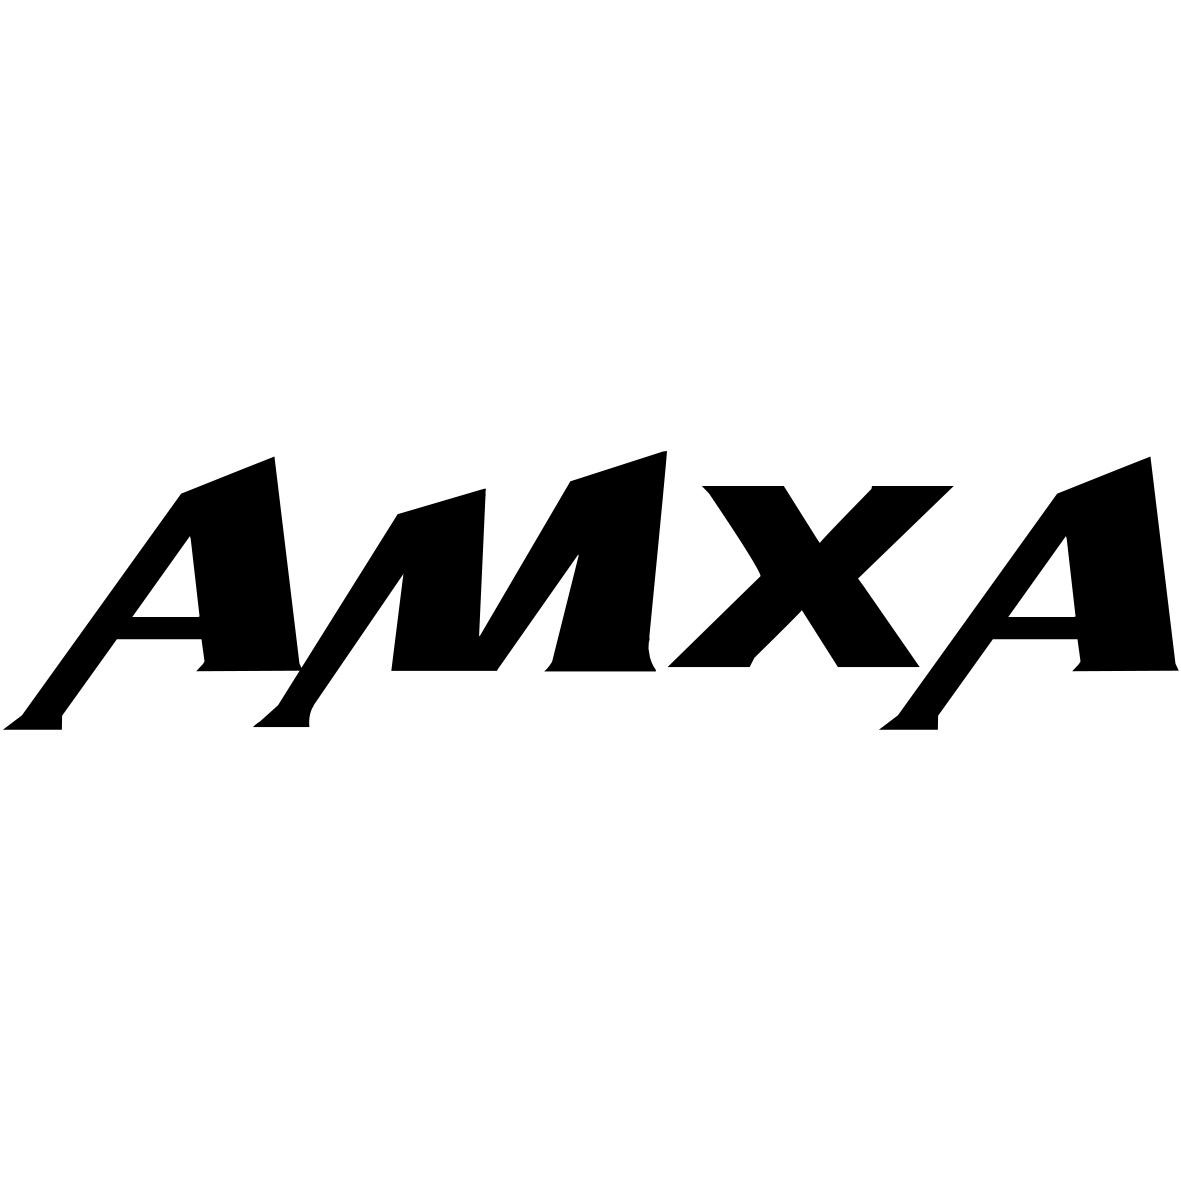 AMXA